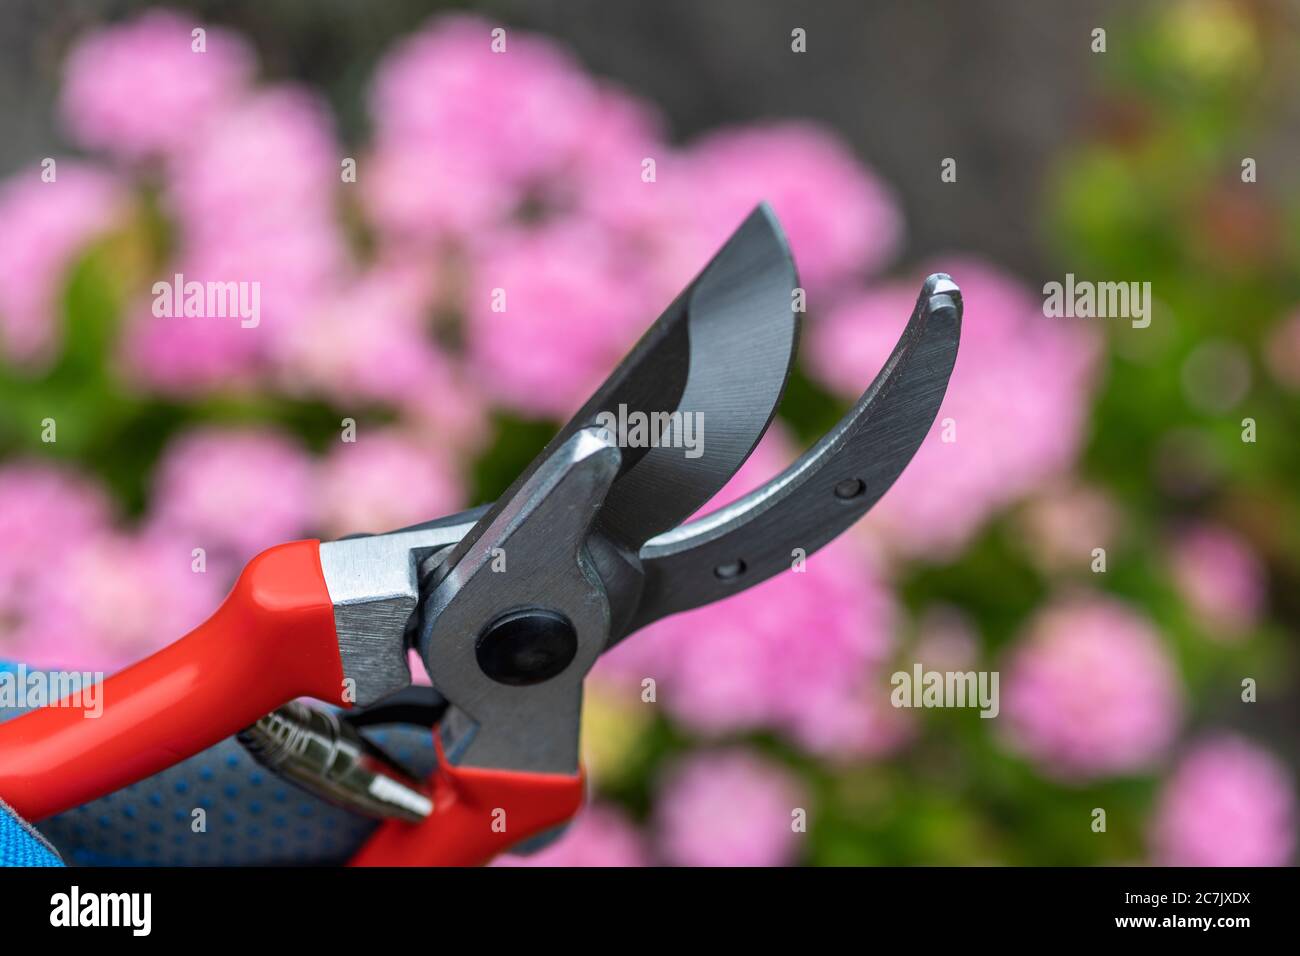 Man's hand with gardening glove holds bypass secateurs, background hydrangeas, garden, Wilhelmshaven, Stock Photo